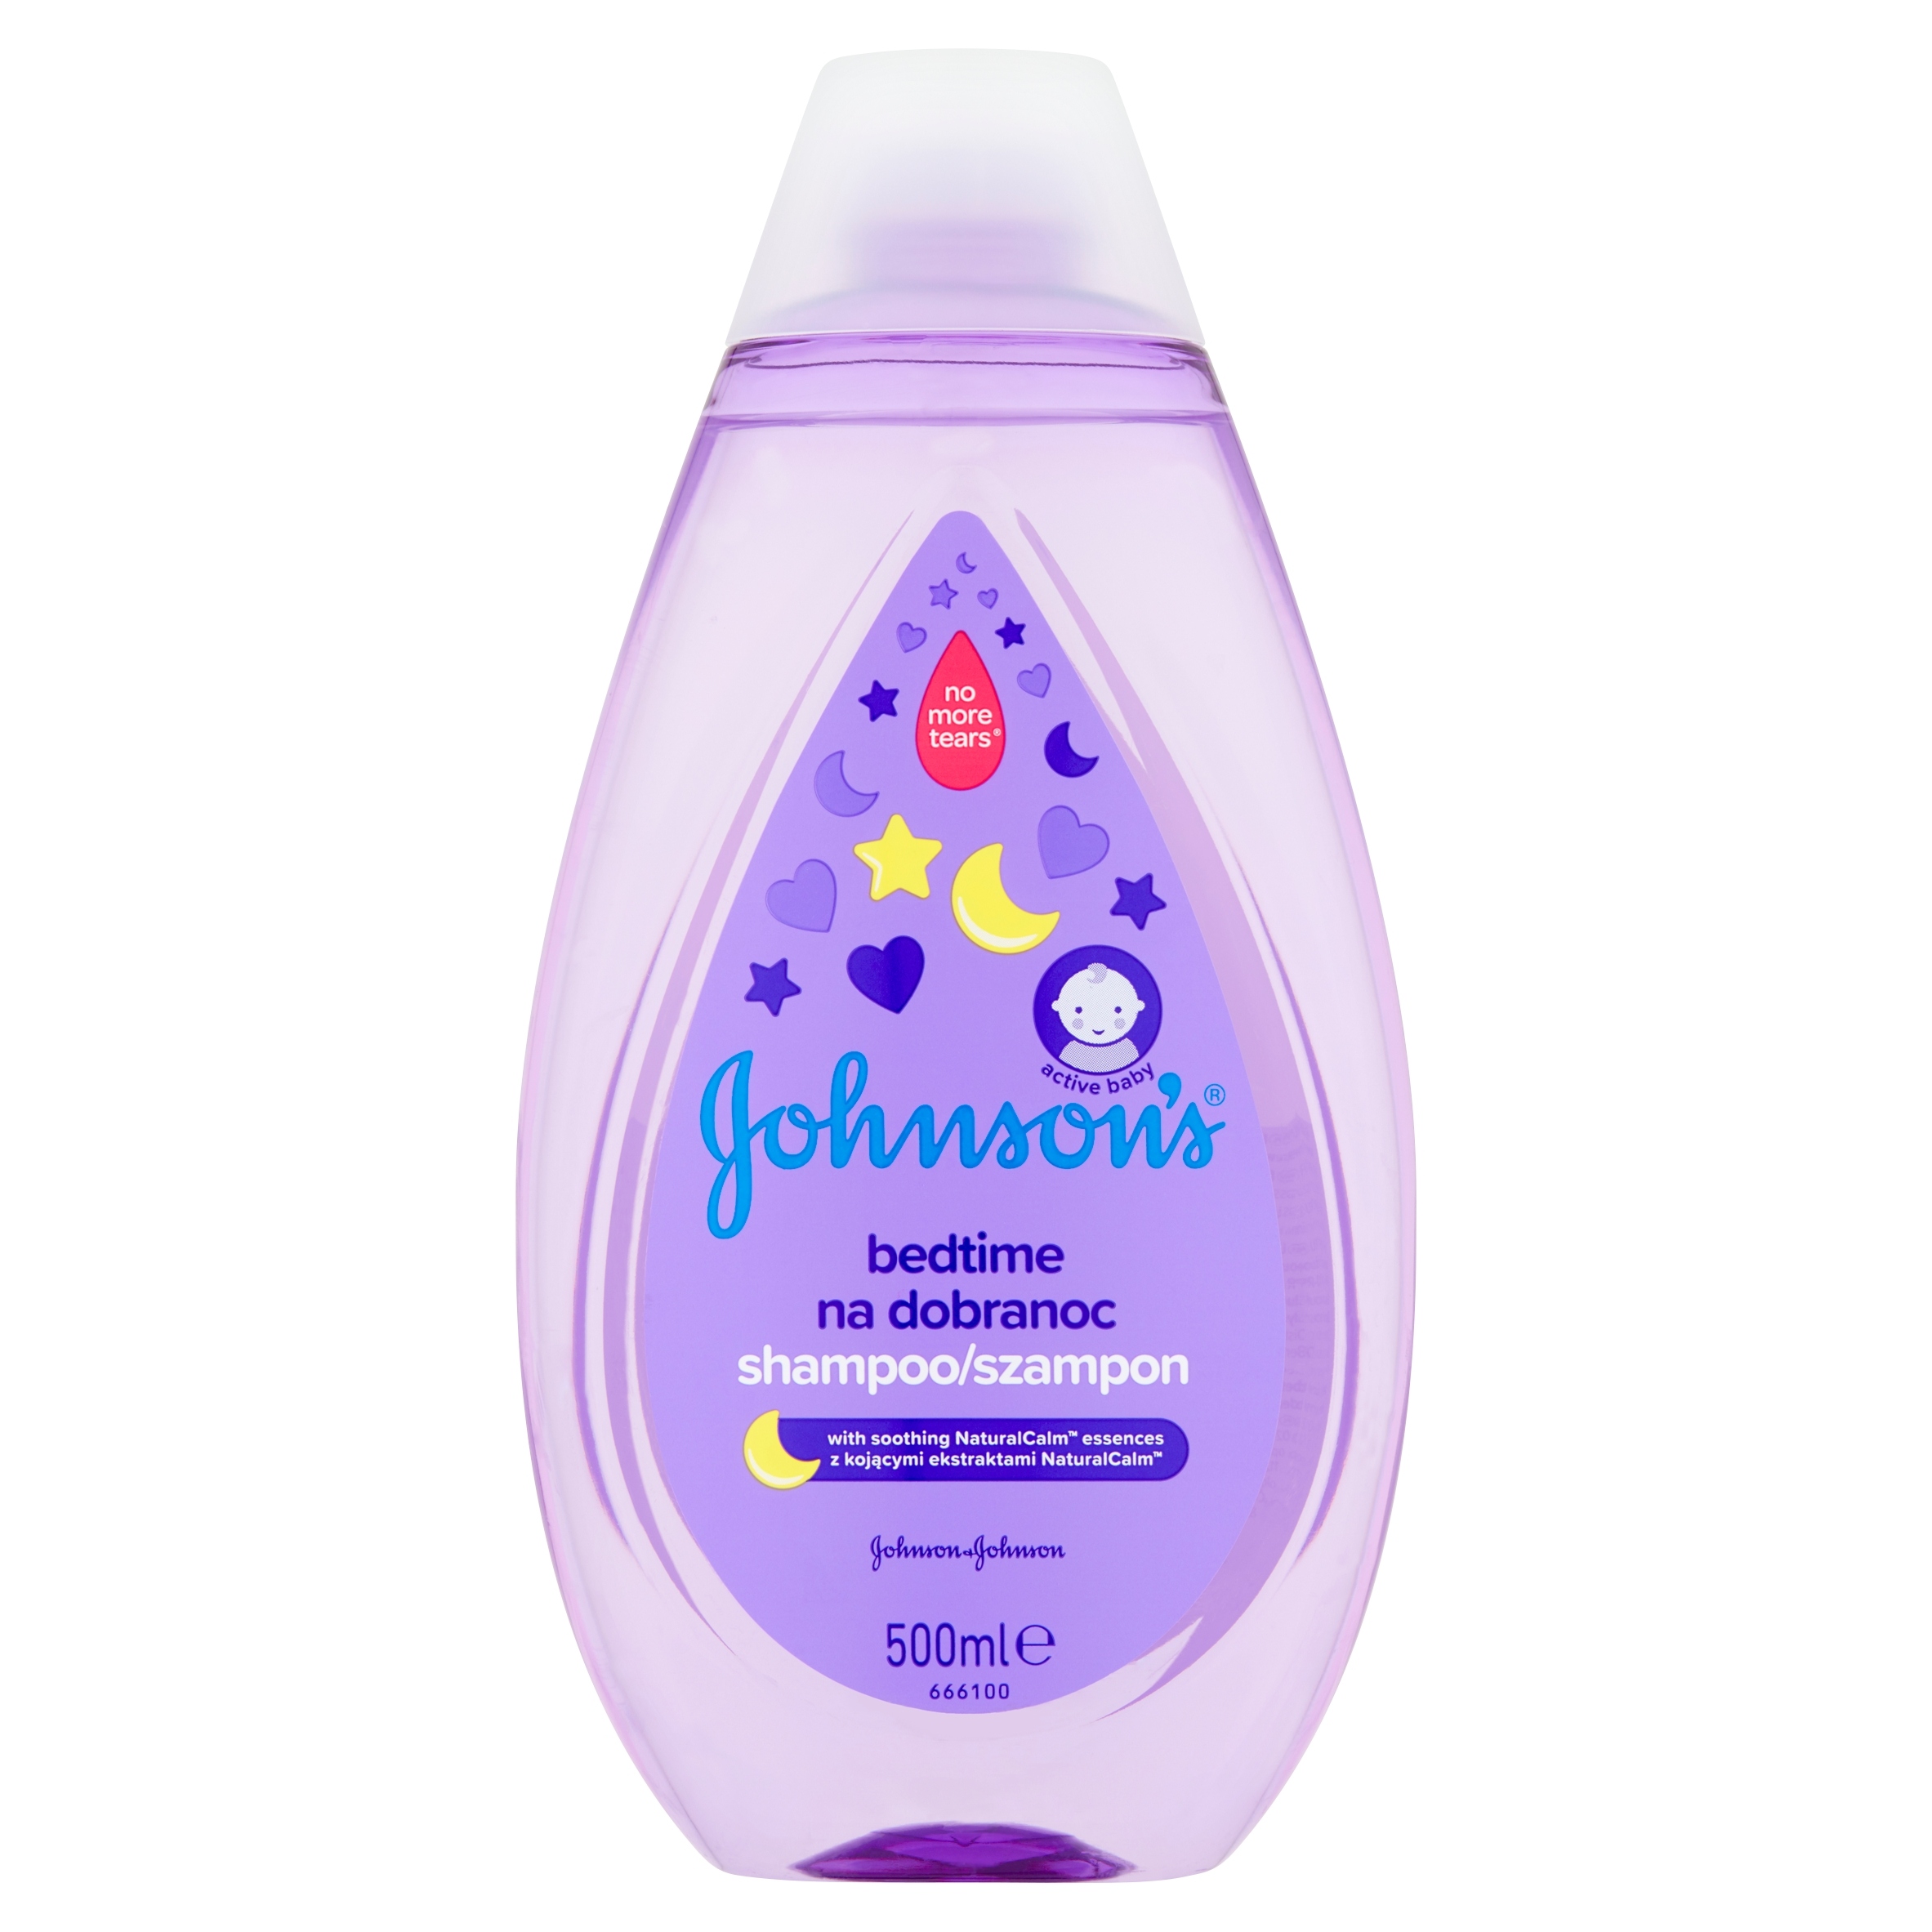 szampon dla dzieci johnsons baby cena